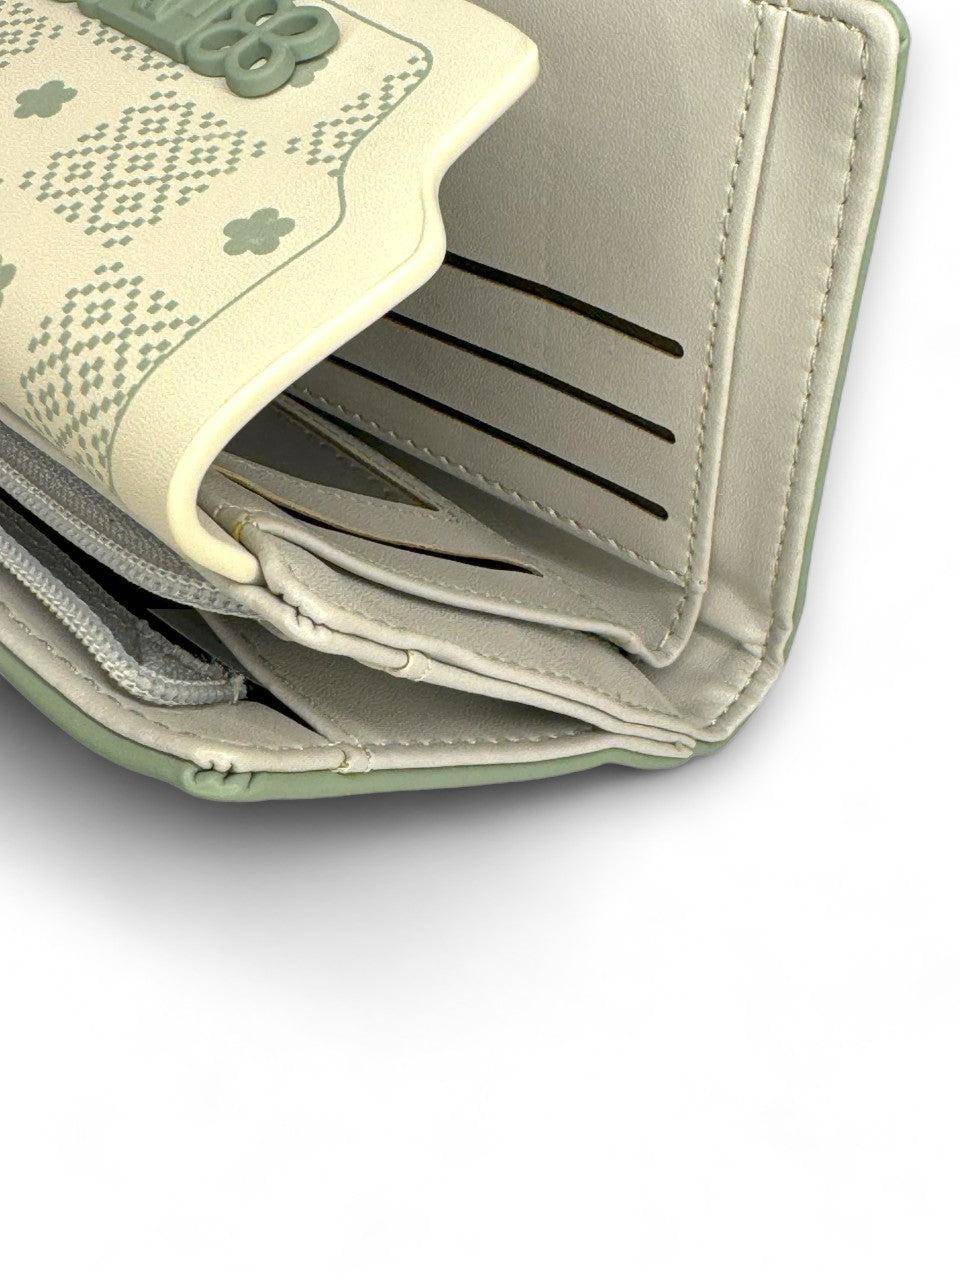 محفظة يد نسائية بتصميم أنيق ومميز باللون الاخضر - KSA